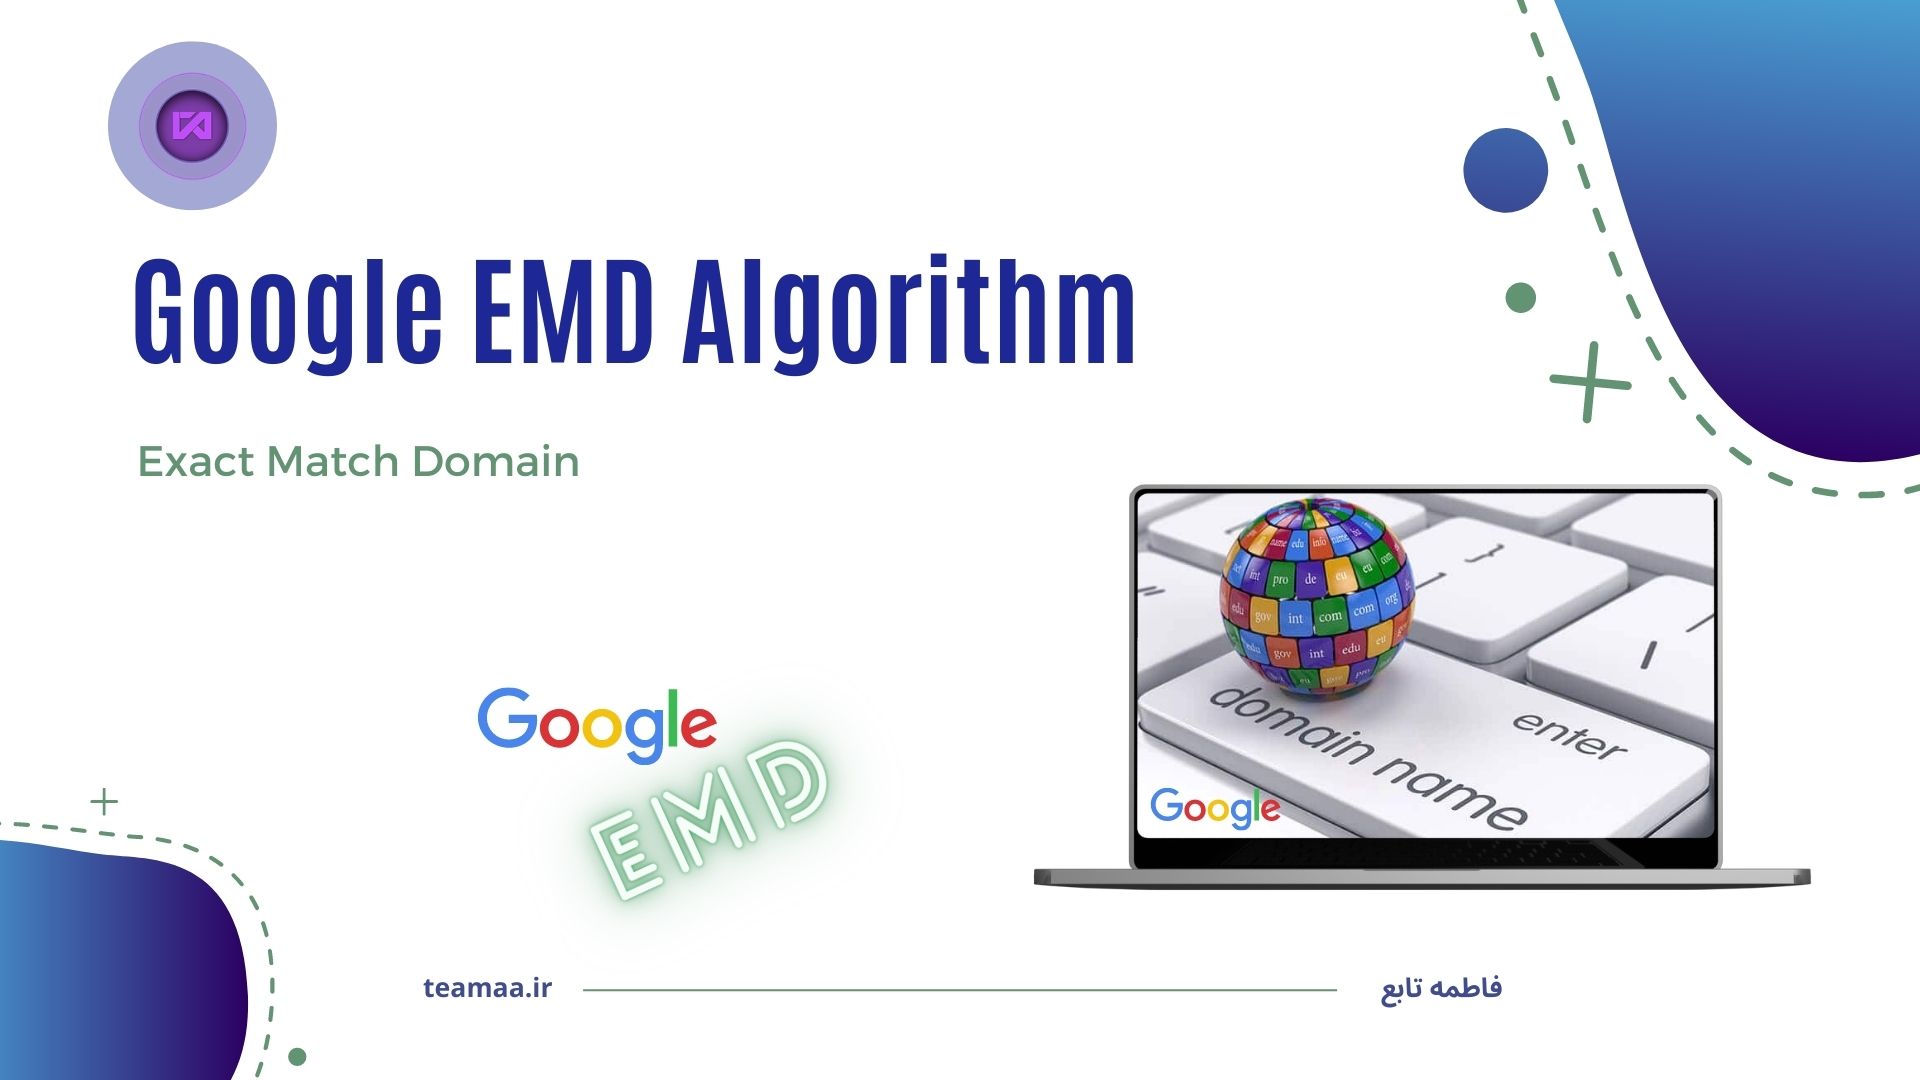 الگوریتم تطبیق دقیق دامنه یا EMD گوگل